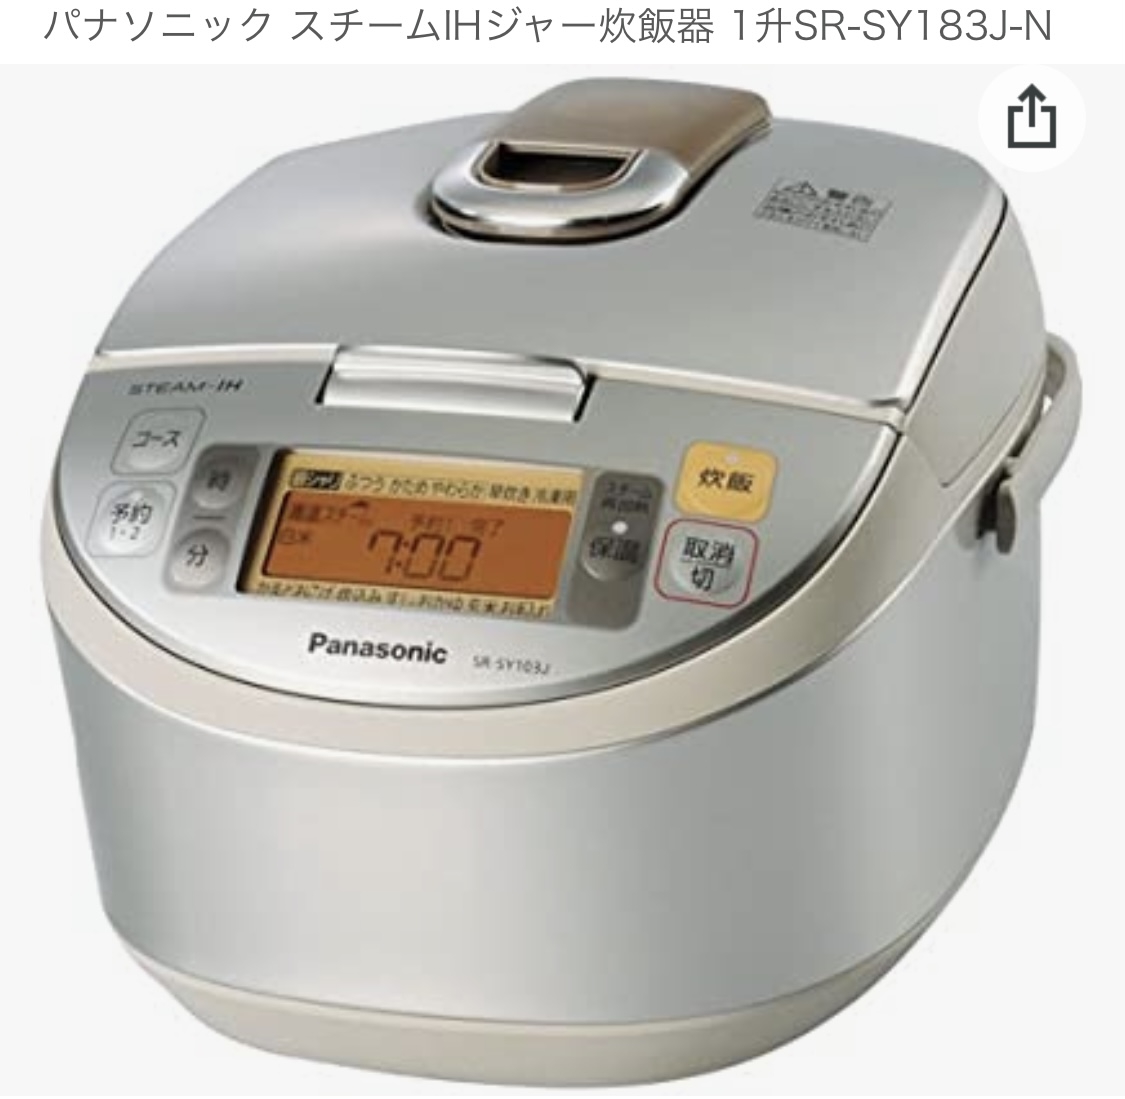 Panasonic(パナソニック) スチームIHジャー炊飯器 SR-SY183J-Nを使ったホトメキさんのクチコミ画像1